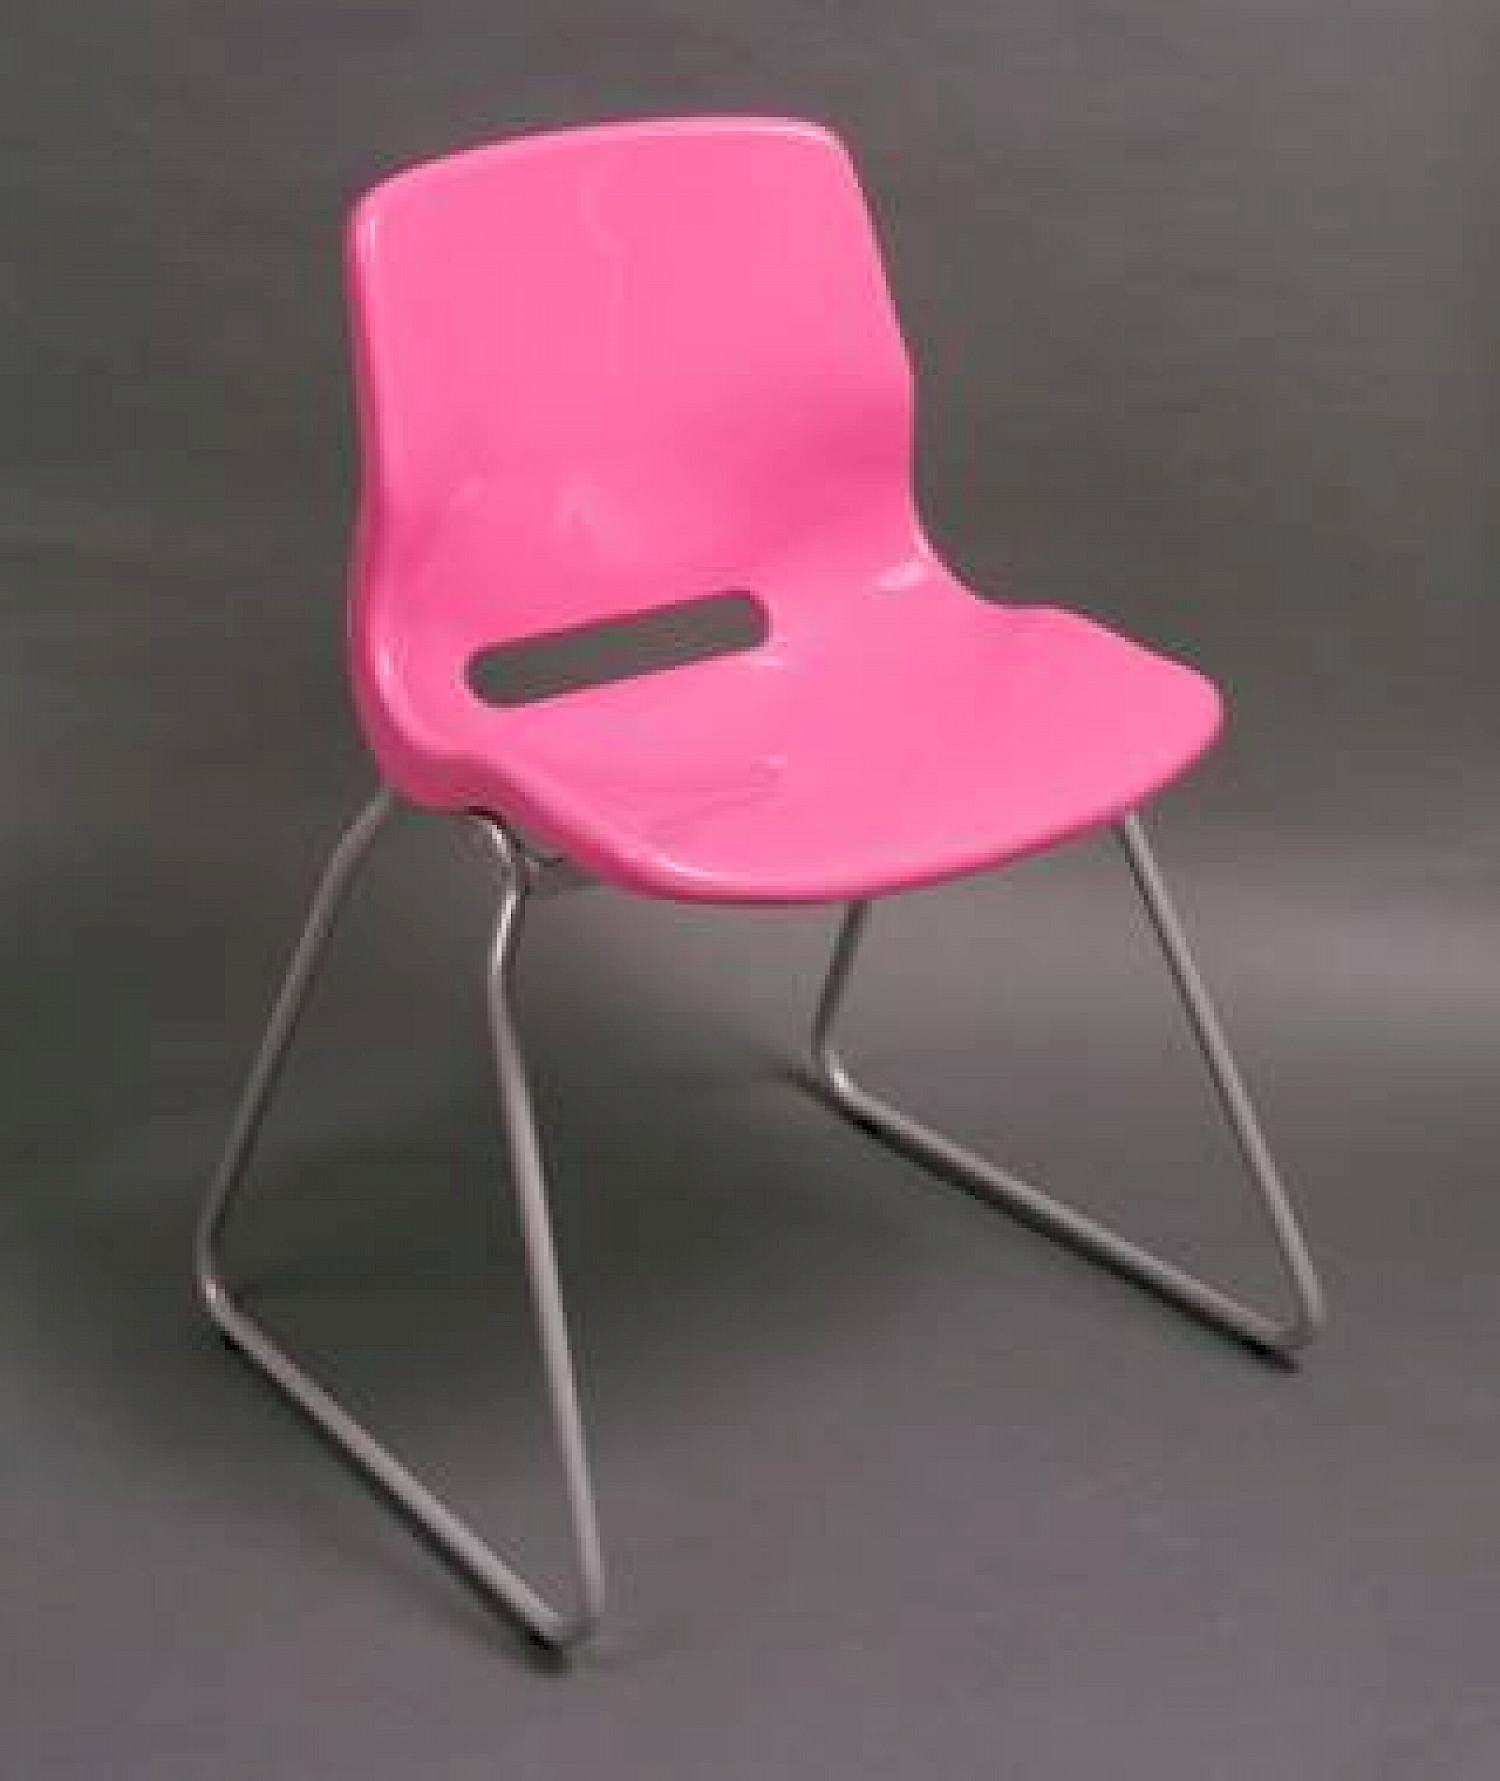 Das gleiche Prinzip von Kunststoffsitzschale und Metalluntergestell: Stuhl 